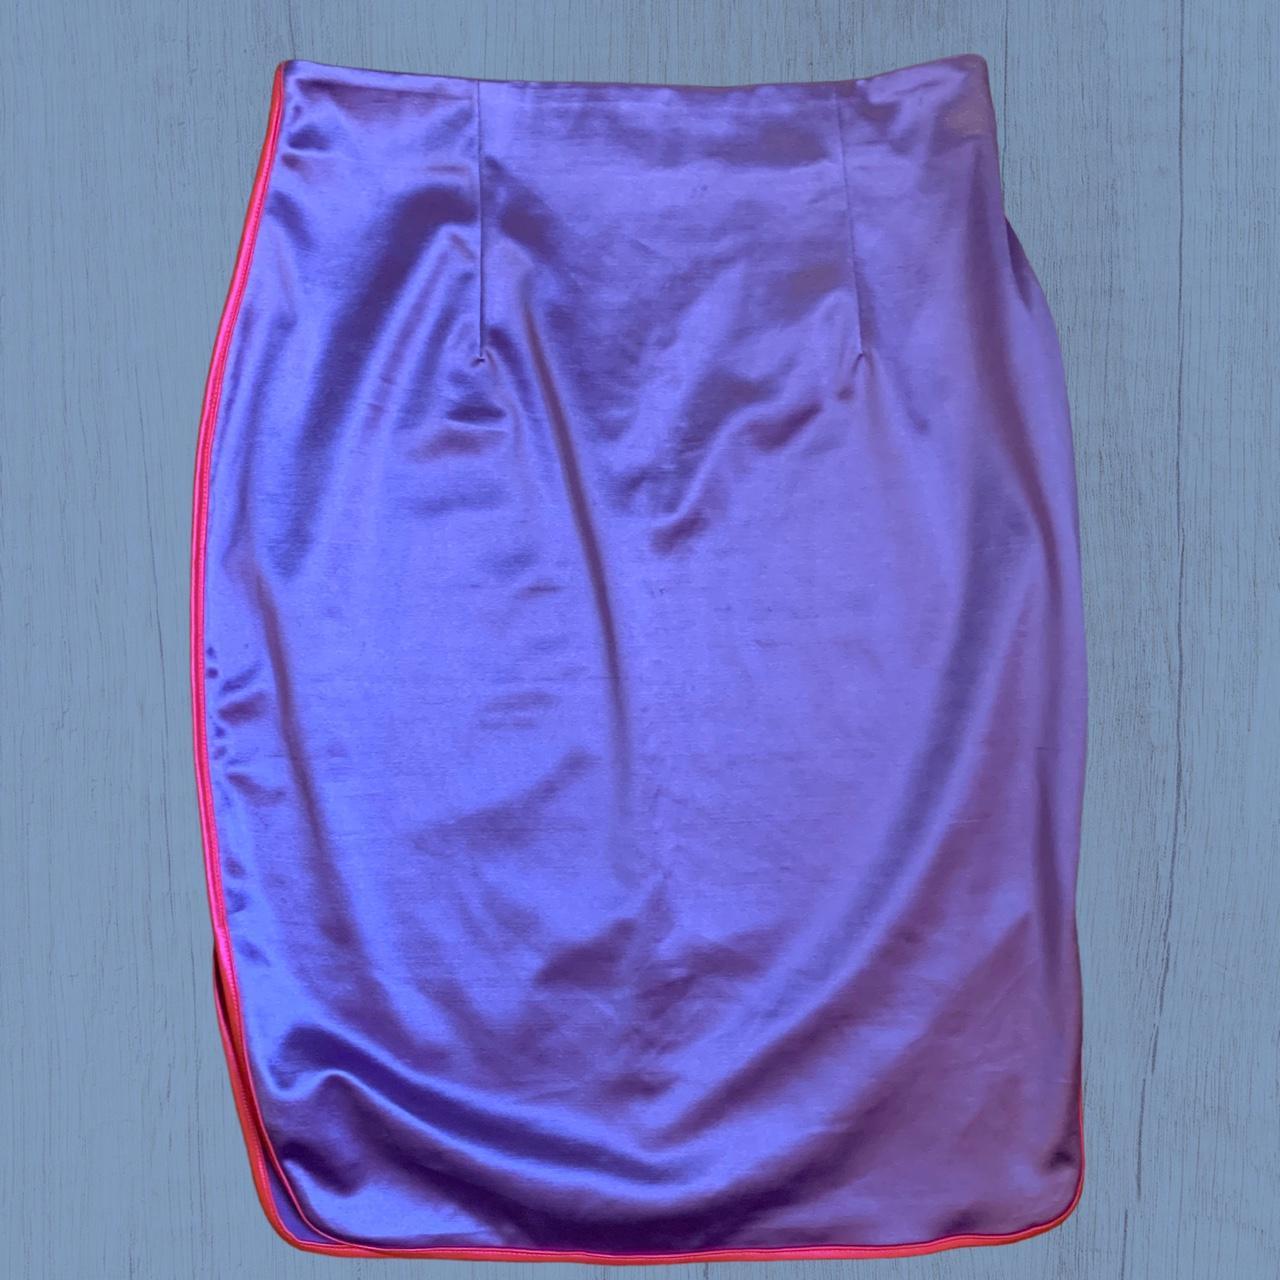 NaaNaa Women's Pink and Purple Skirt (2)